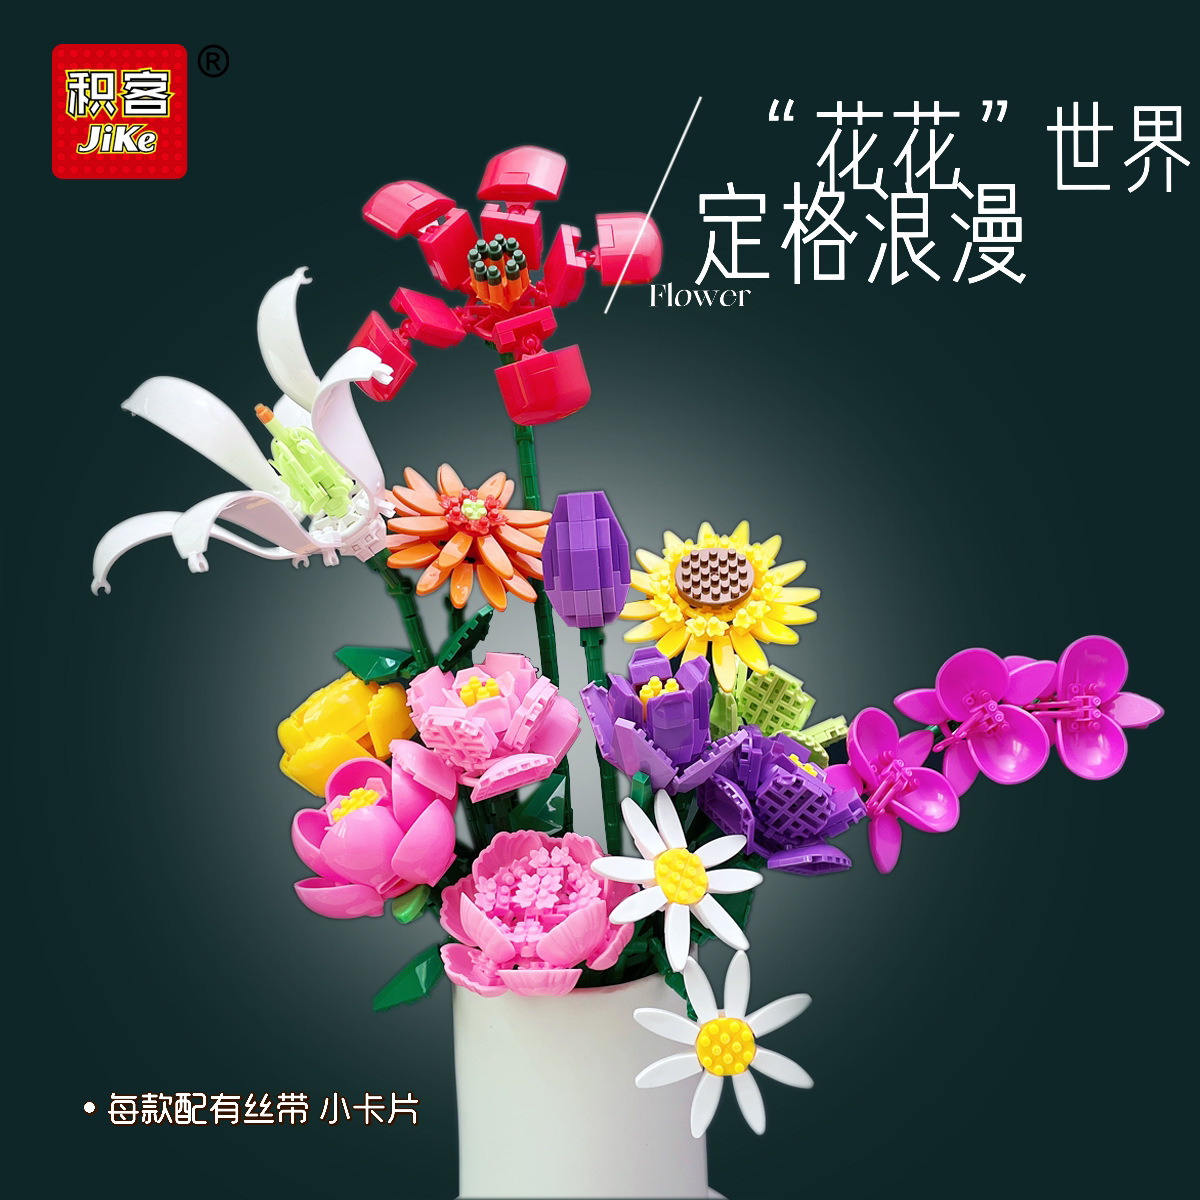 立体积客积木袋装系列鲜花永生花束向日葵百合微儿童益智拼装玩具